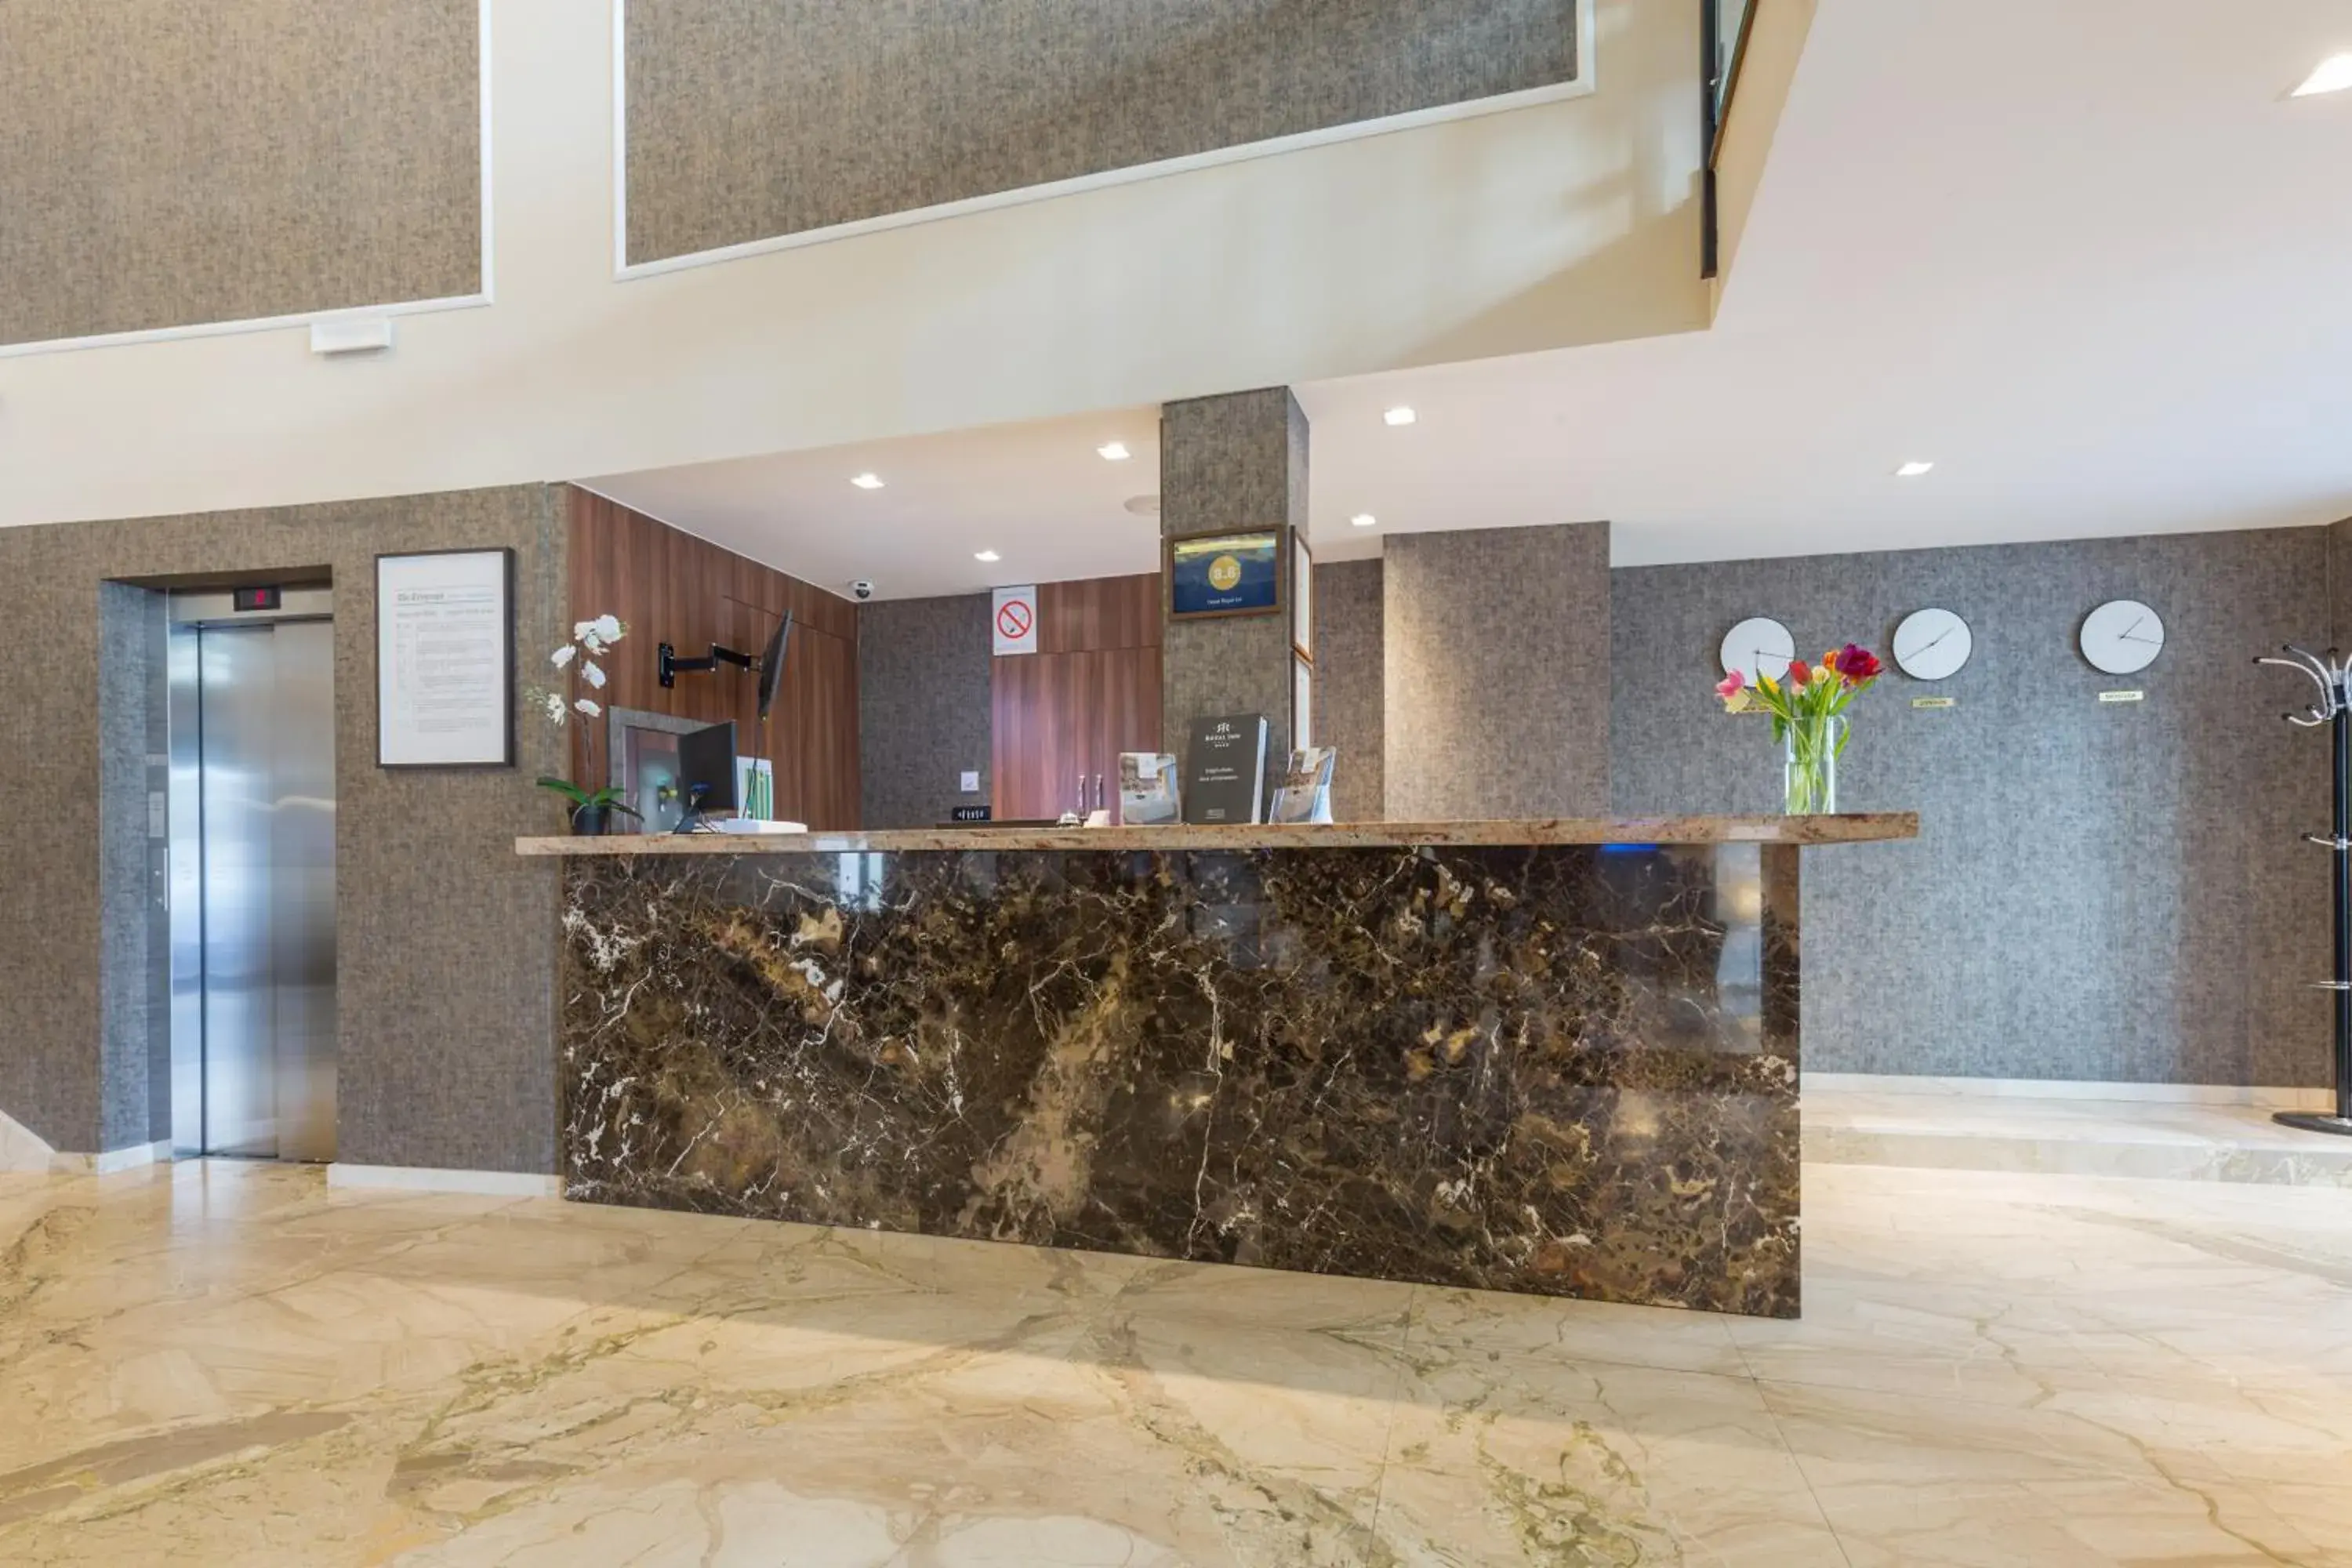 Lobby or reception, Lobby/Reception in Hotel Royal Inn